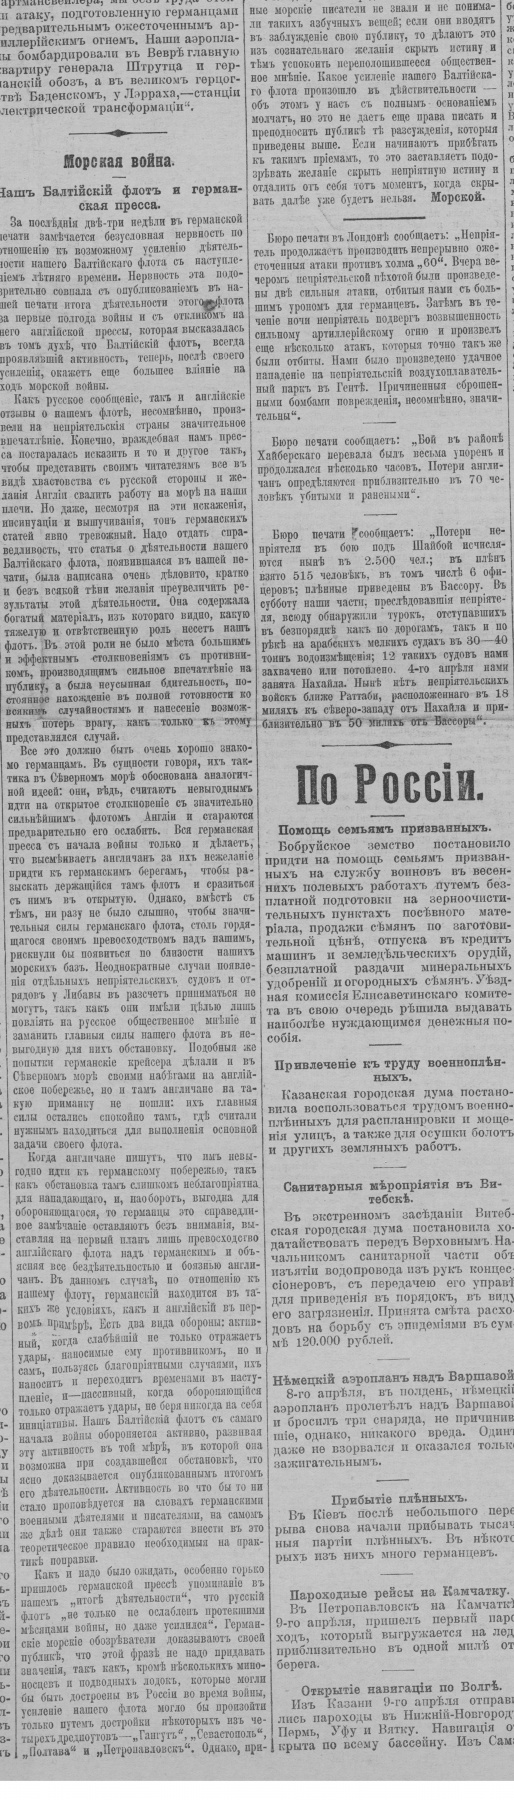 Правительственный вестник, № 80 от 10.04.1915